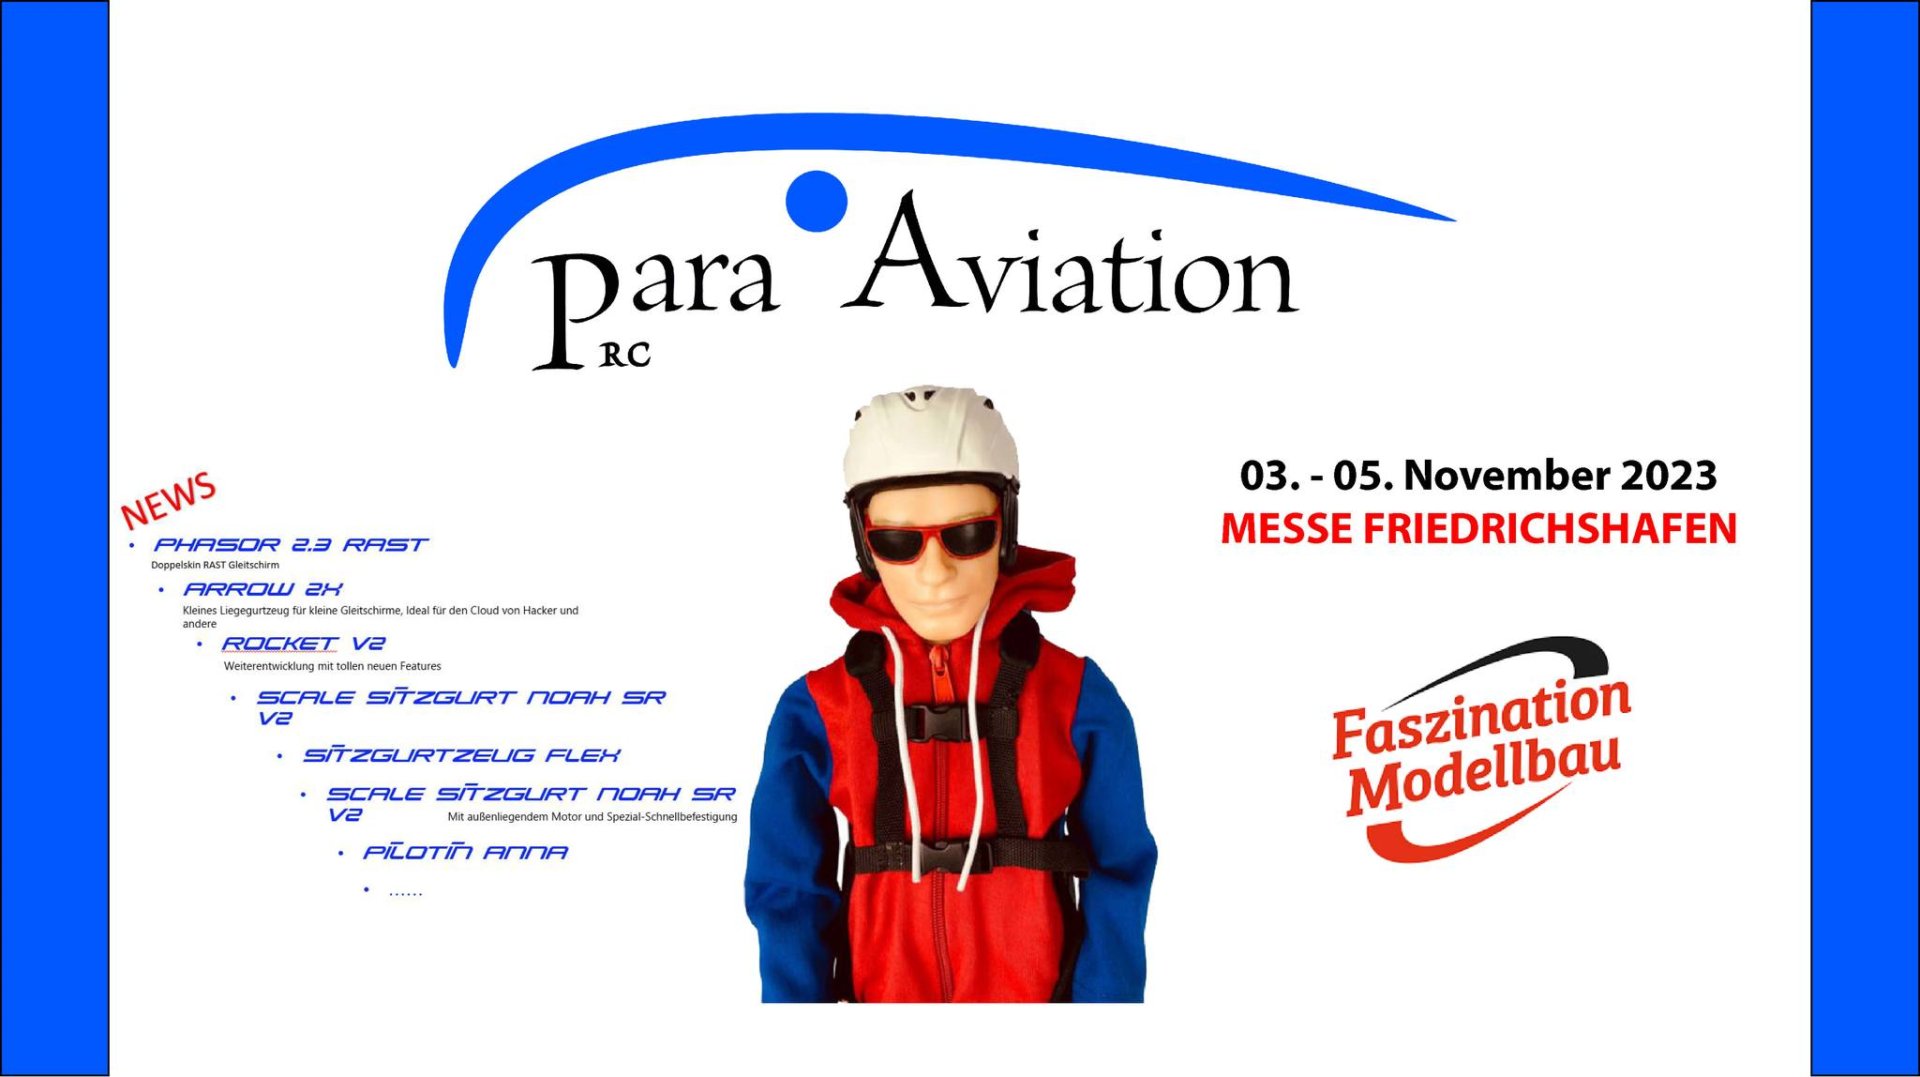 messe_faszination_modellbau_friedrichshafen_2023_para_aviation_rc_paragliding_piloten_gurtzeug...jpg